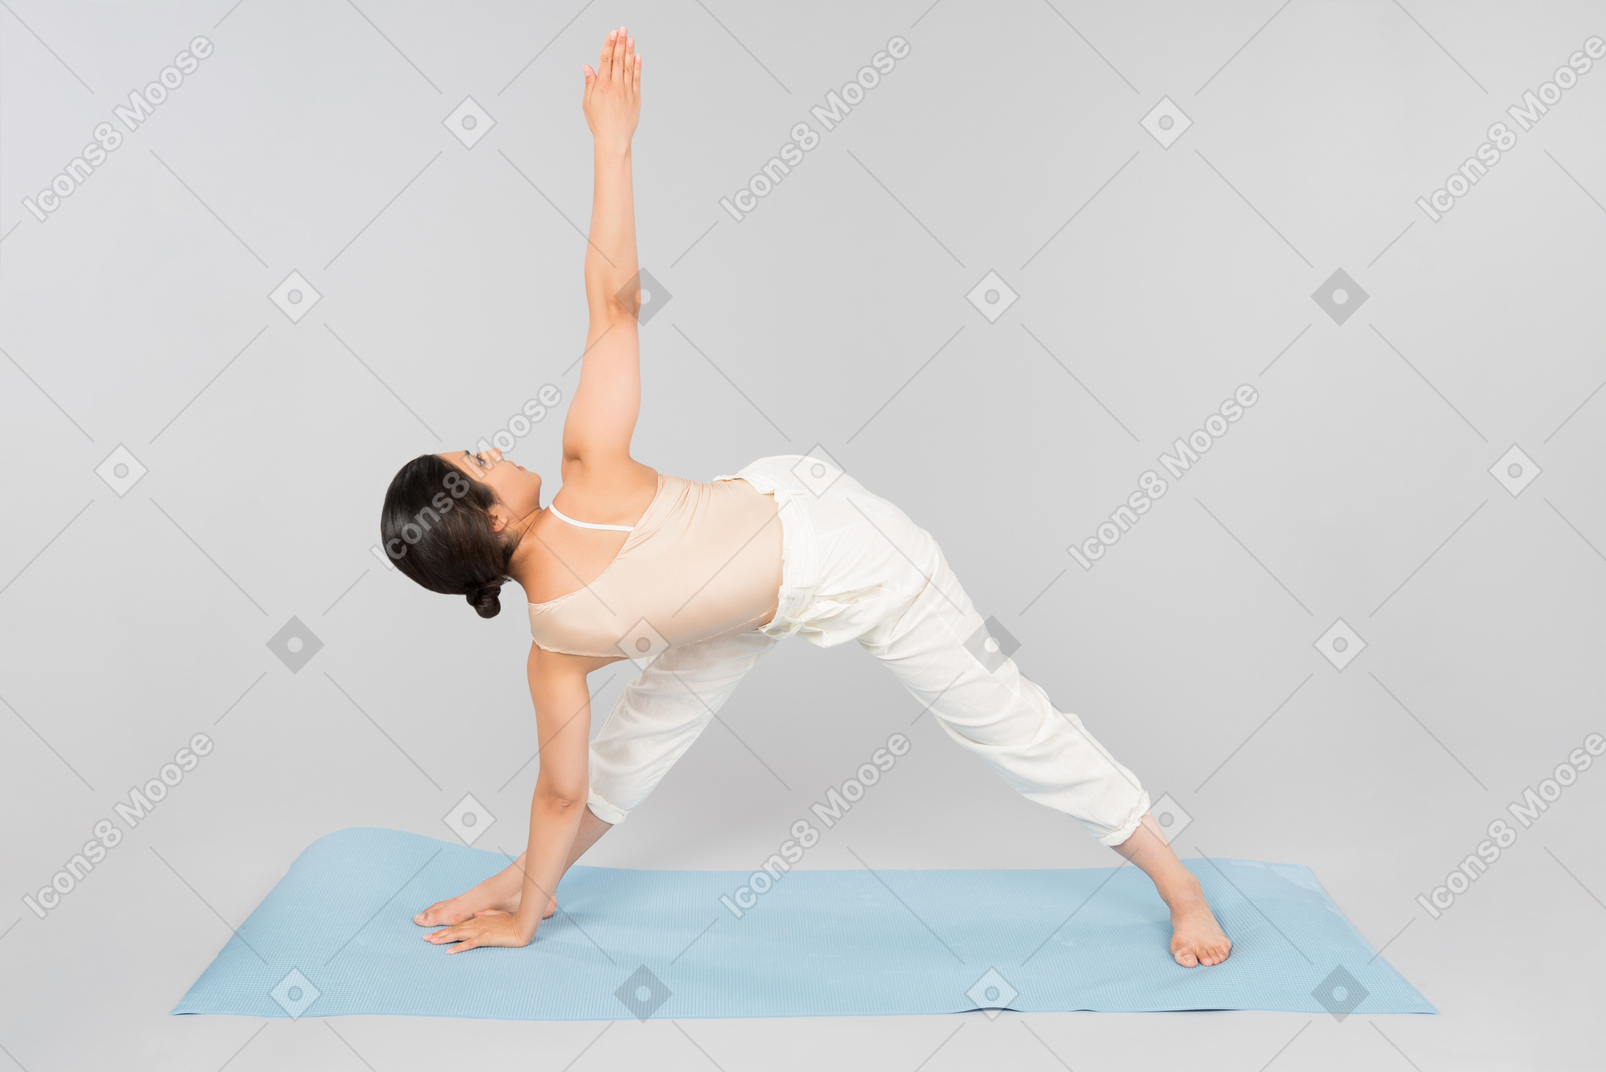 Jovem mulher indiana em pé no tapete de ioga em uma pose